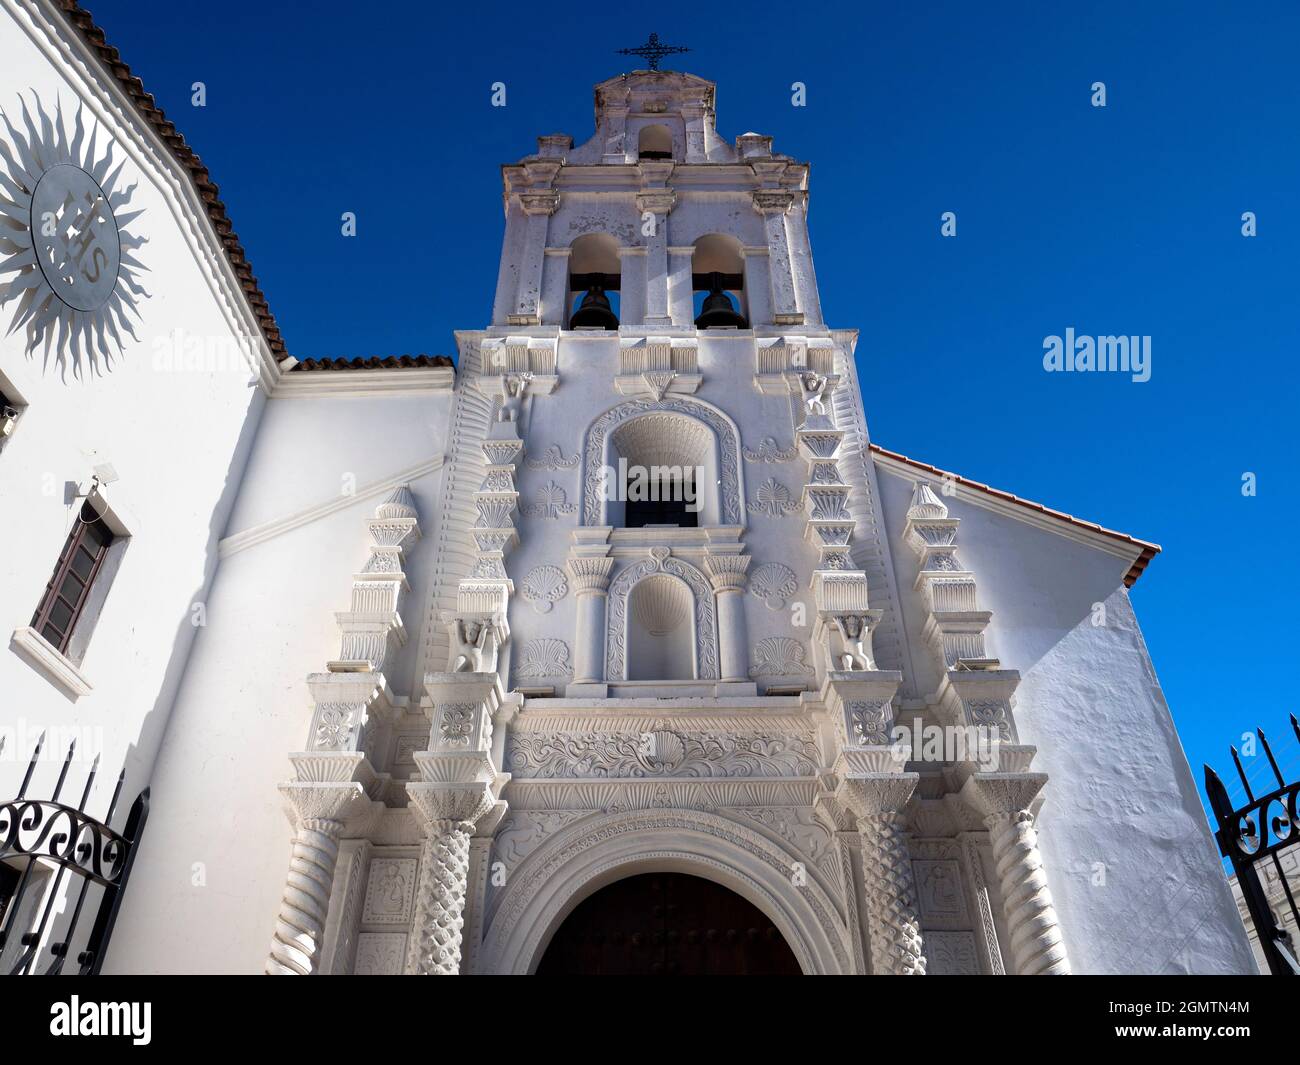 Sucre, Bolivien - 10. Mai 2018 Um ihr ihren vollen Namen zu geben, wurde die Kirche Nuestra SE–ora de la Merced in der Mitte des 16. Jahrhunderts von der Kongregation o erbaut Stockfoto